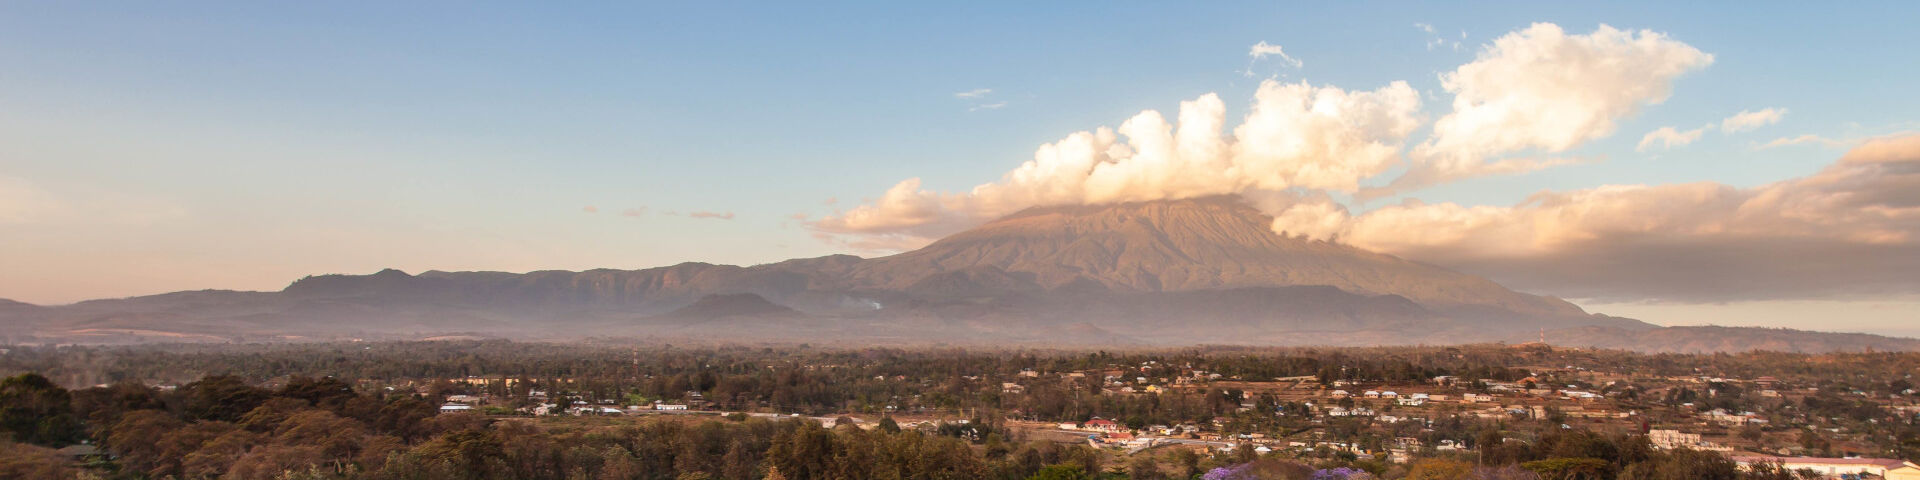 Mount Meru Looks Down on Arusha, Tanzania